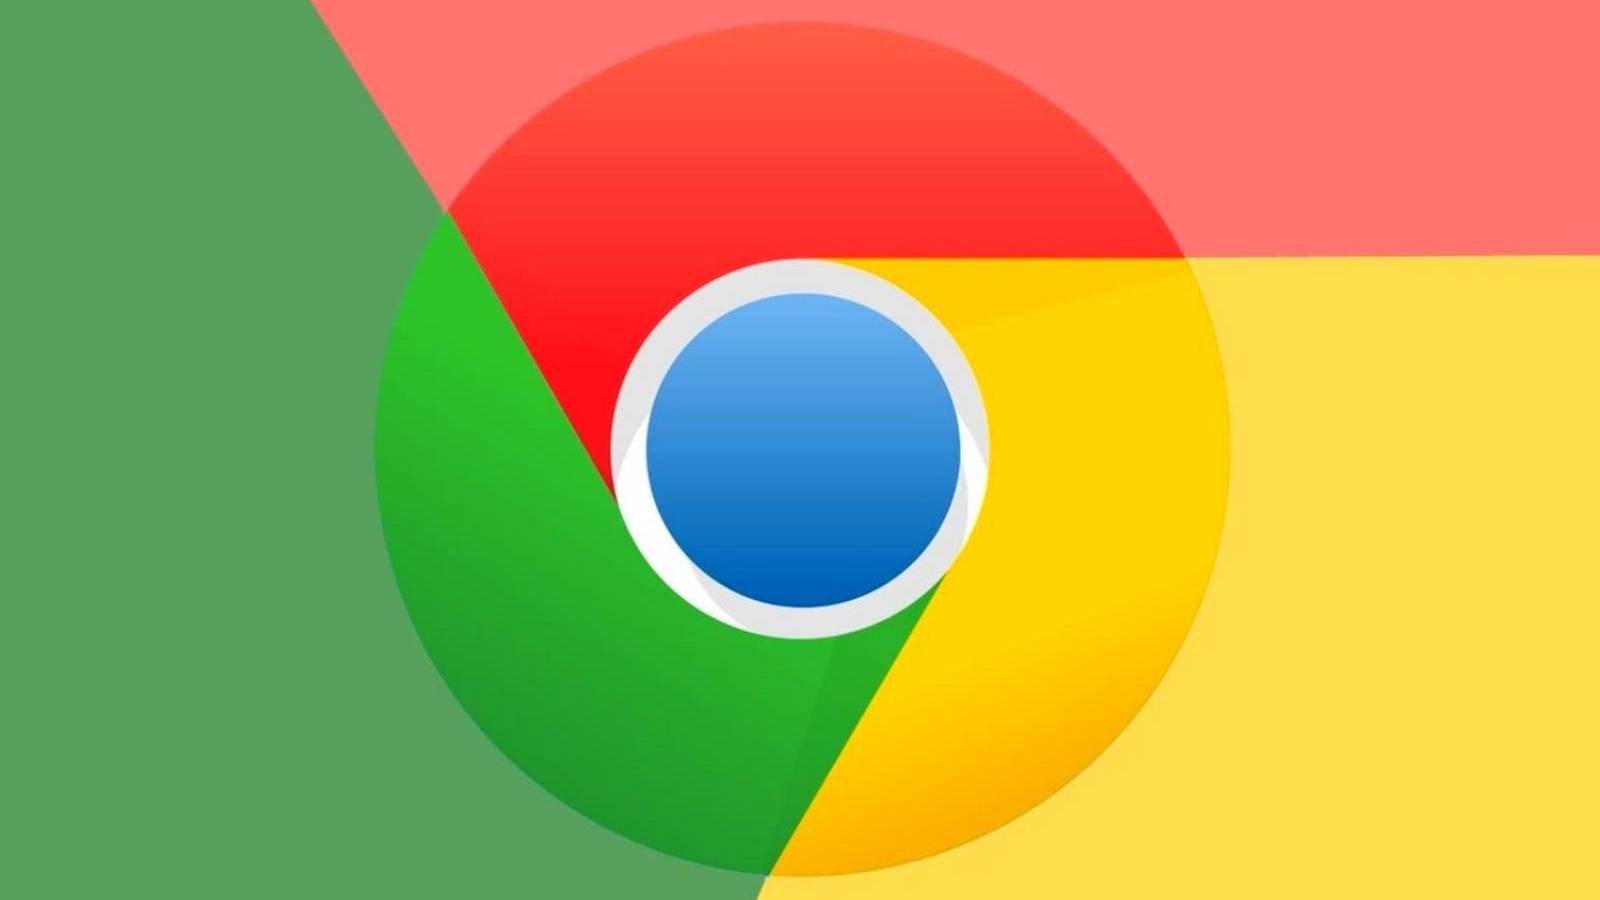 Google Chrome Update brengt nieuwe veranderingen voor telefoons en tablets